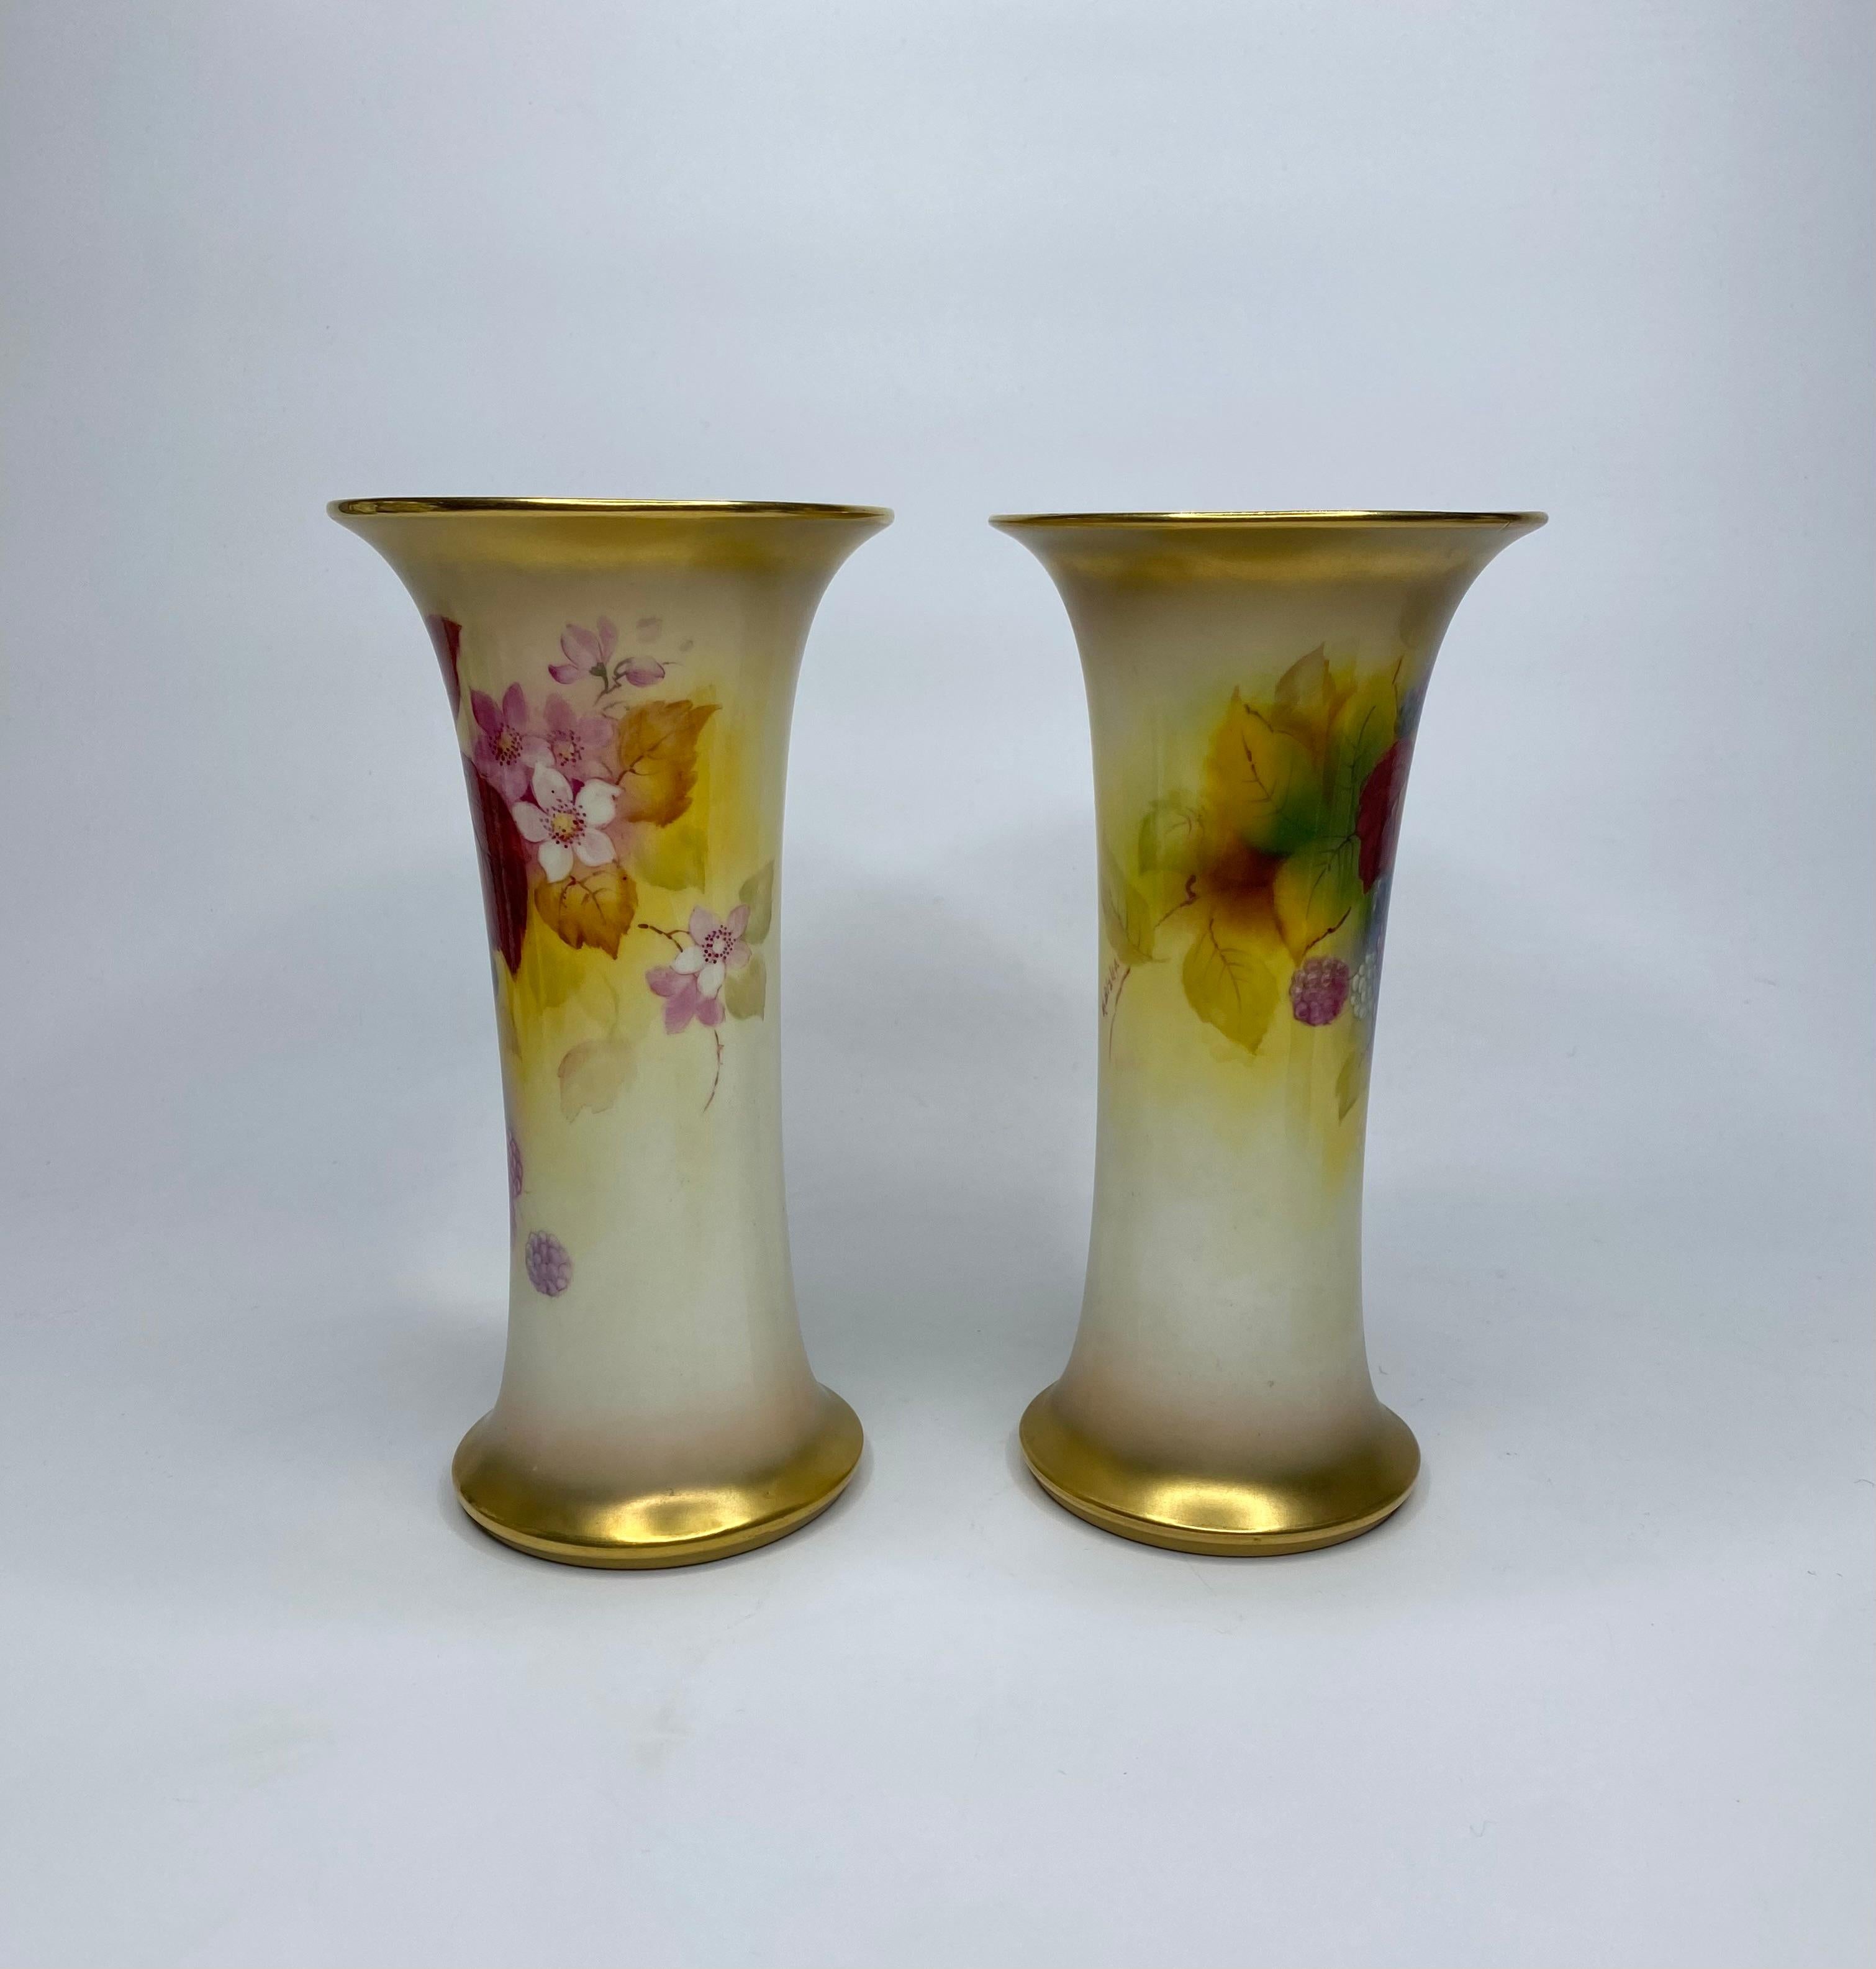 Paire de vases en porcelaine Royal Worcester, signés Kitty Blake, datés de 1936. Les deux vases en forme de trompette sont finement peints avec des études de mûres, parmi des feuilles d'automne et des fleurs, entre des bords dorés.
Signé - K.K.